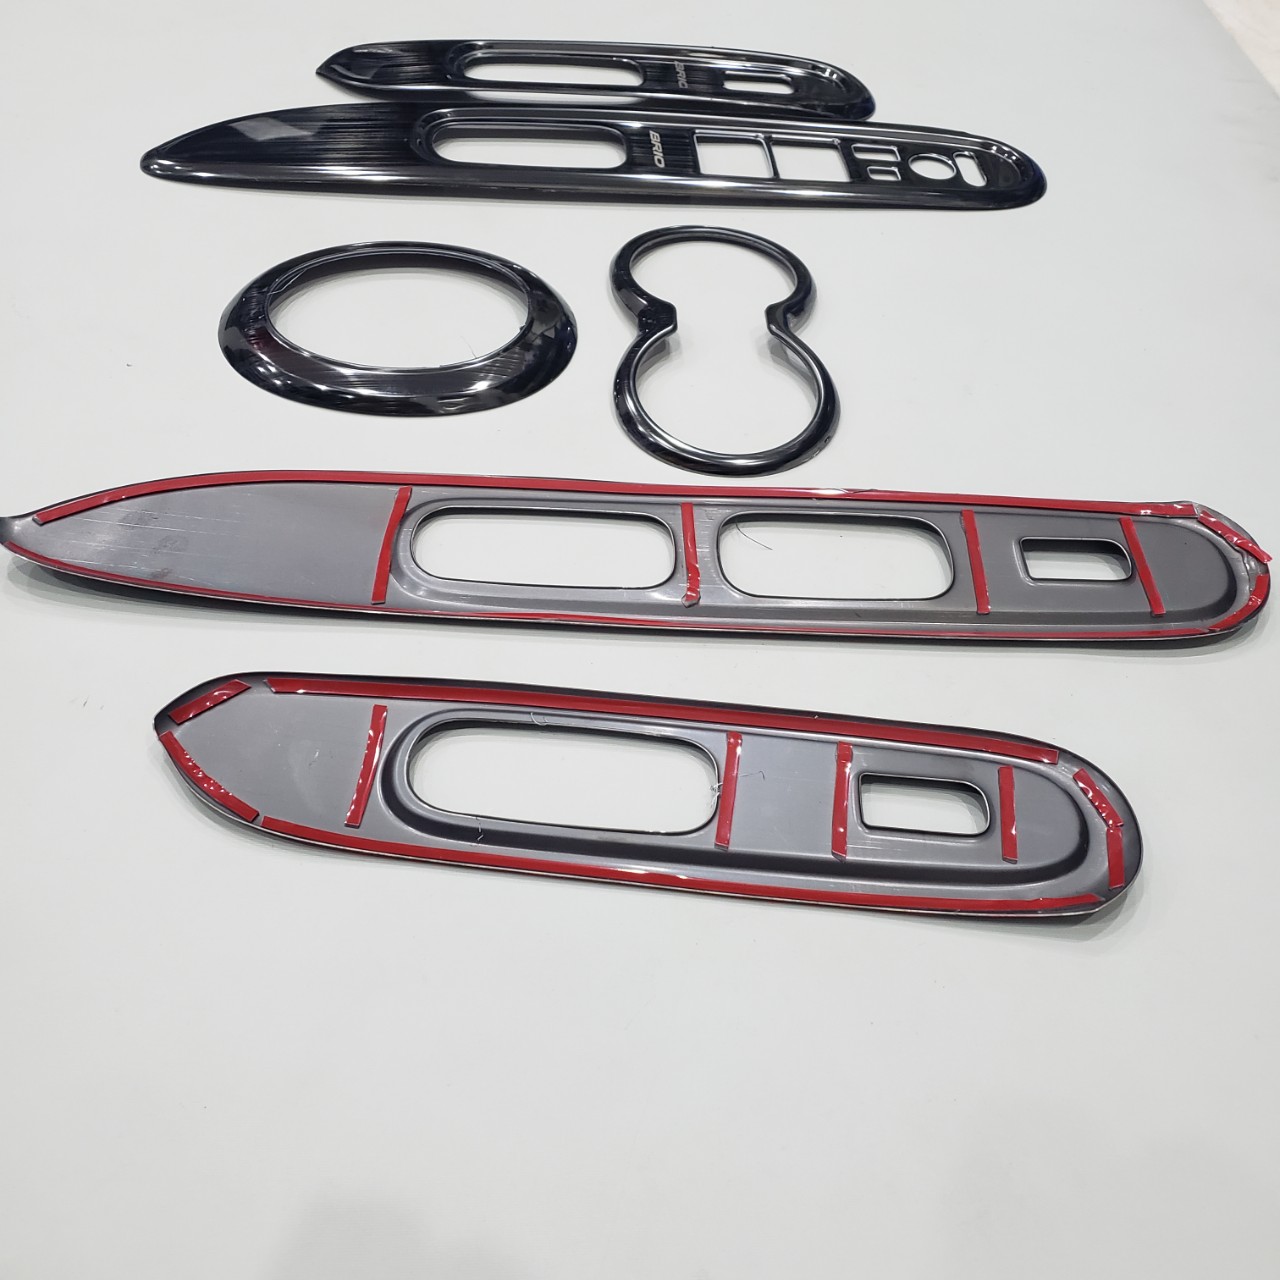 Bộ ốp nội thất Titan cao cấp dành cho xe Honda Brio - 6 Chi tiết